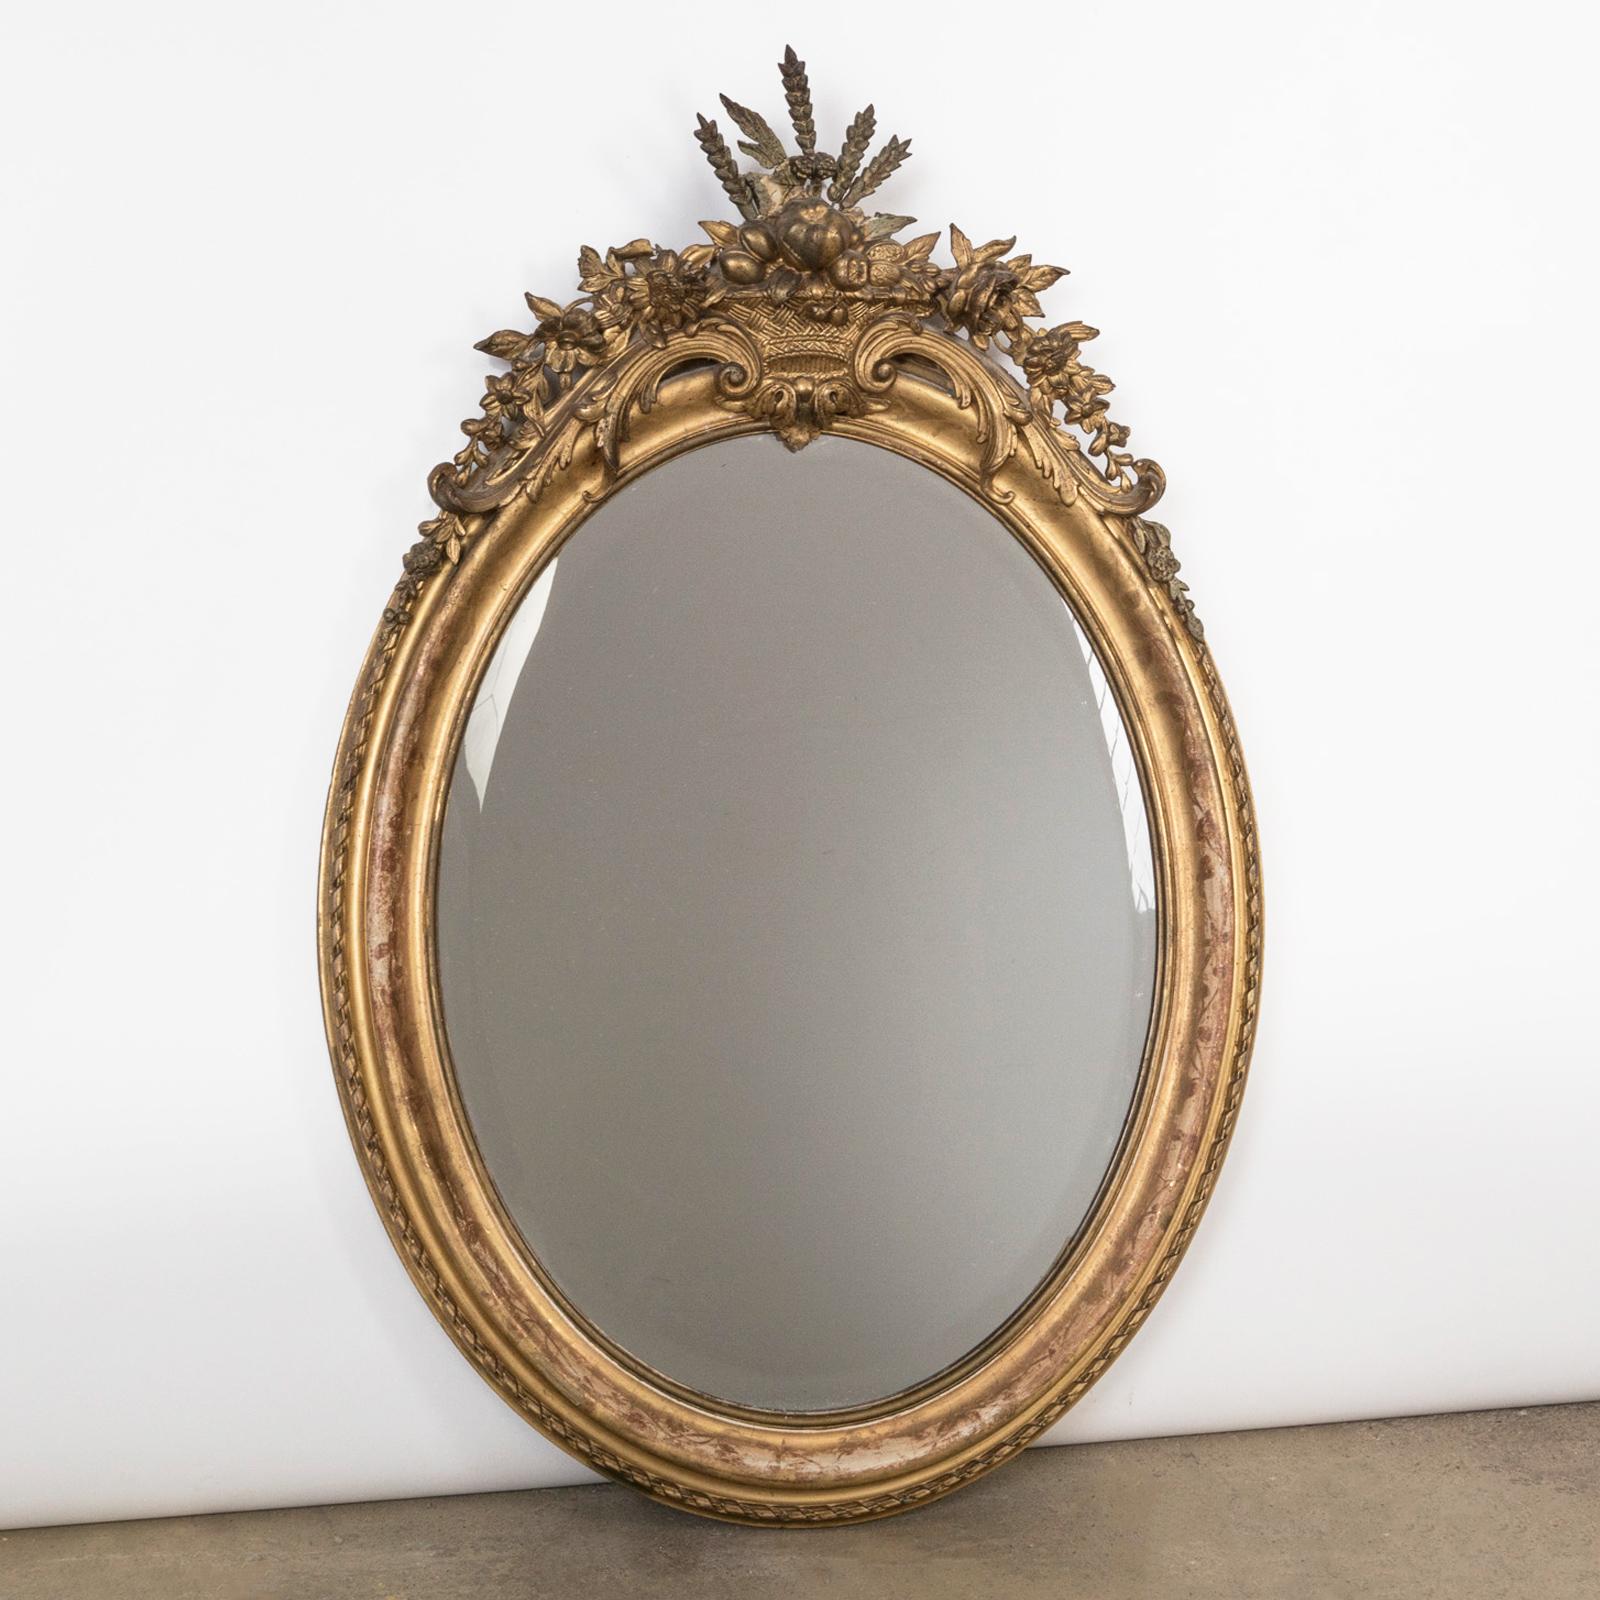 Antiker französischer ovaler, blattvergoldeter Spiegel aus dem 19. Jahrhundert mit einer Krone in Form von Korbfrüchten und Blumen.

Ein schöner antiker ovaler Spiegel, der um 1880 in Frankreich hergestellt wurde.

Der Spiegelrahmen ist mit